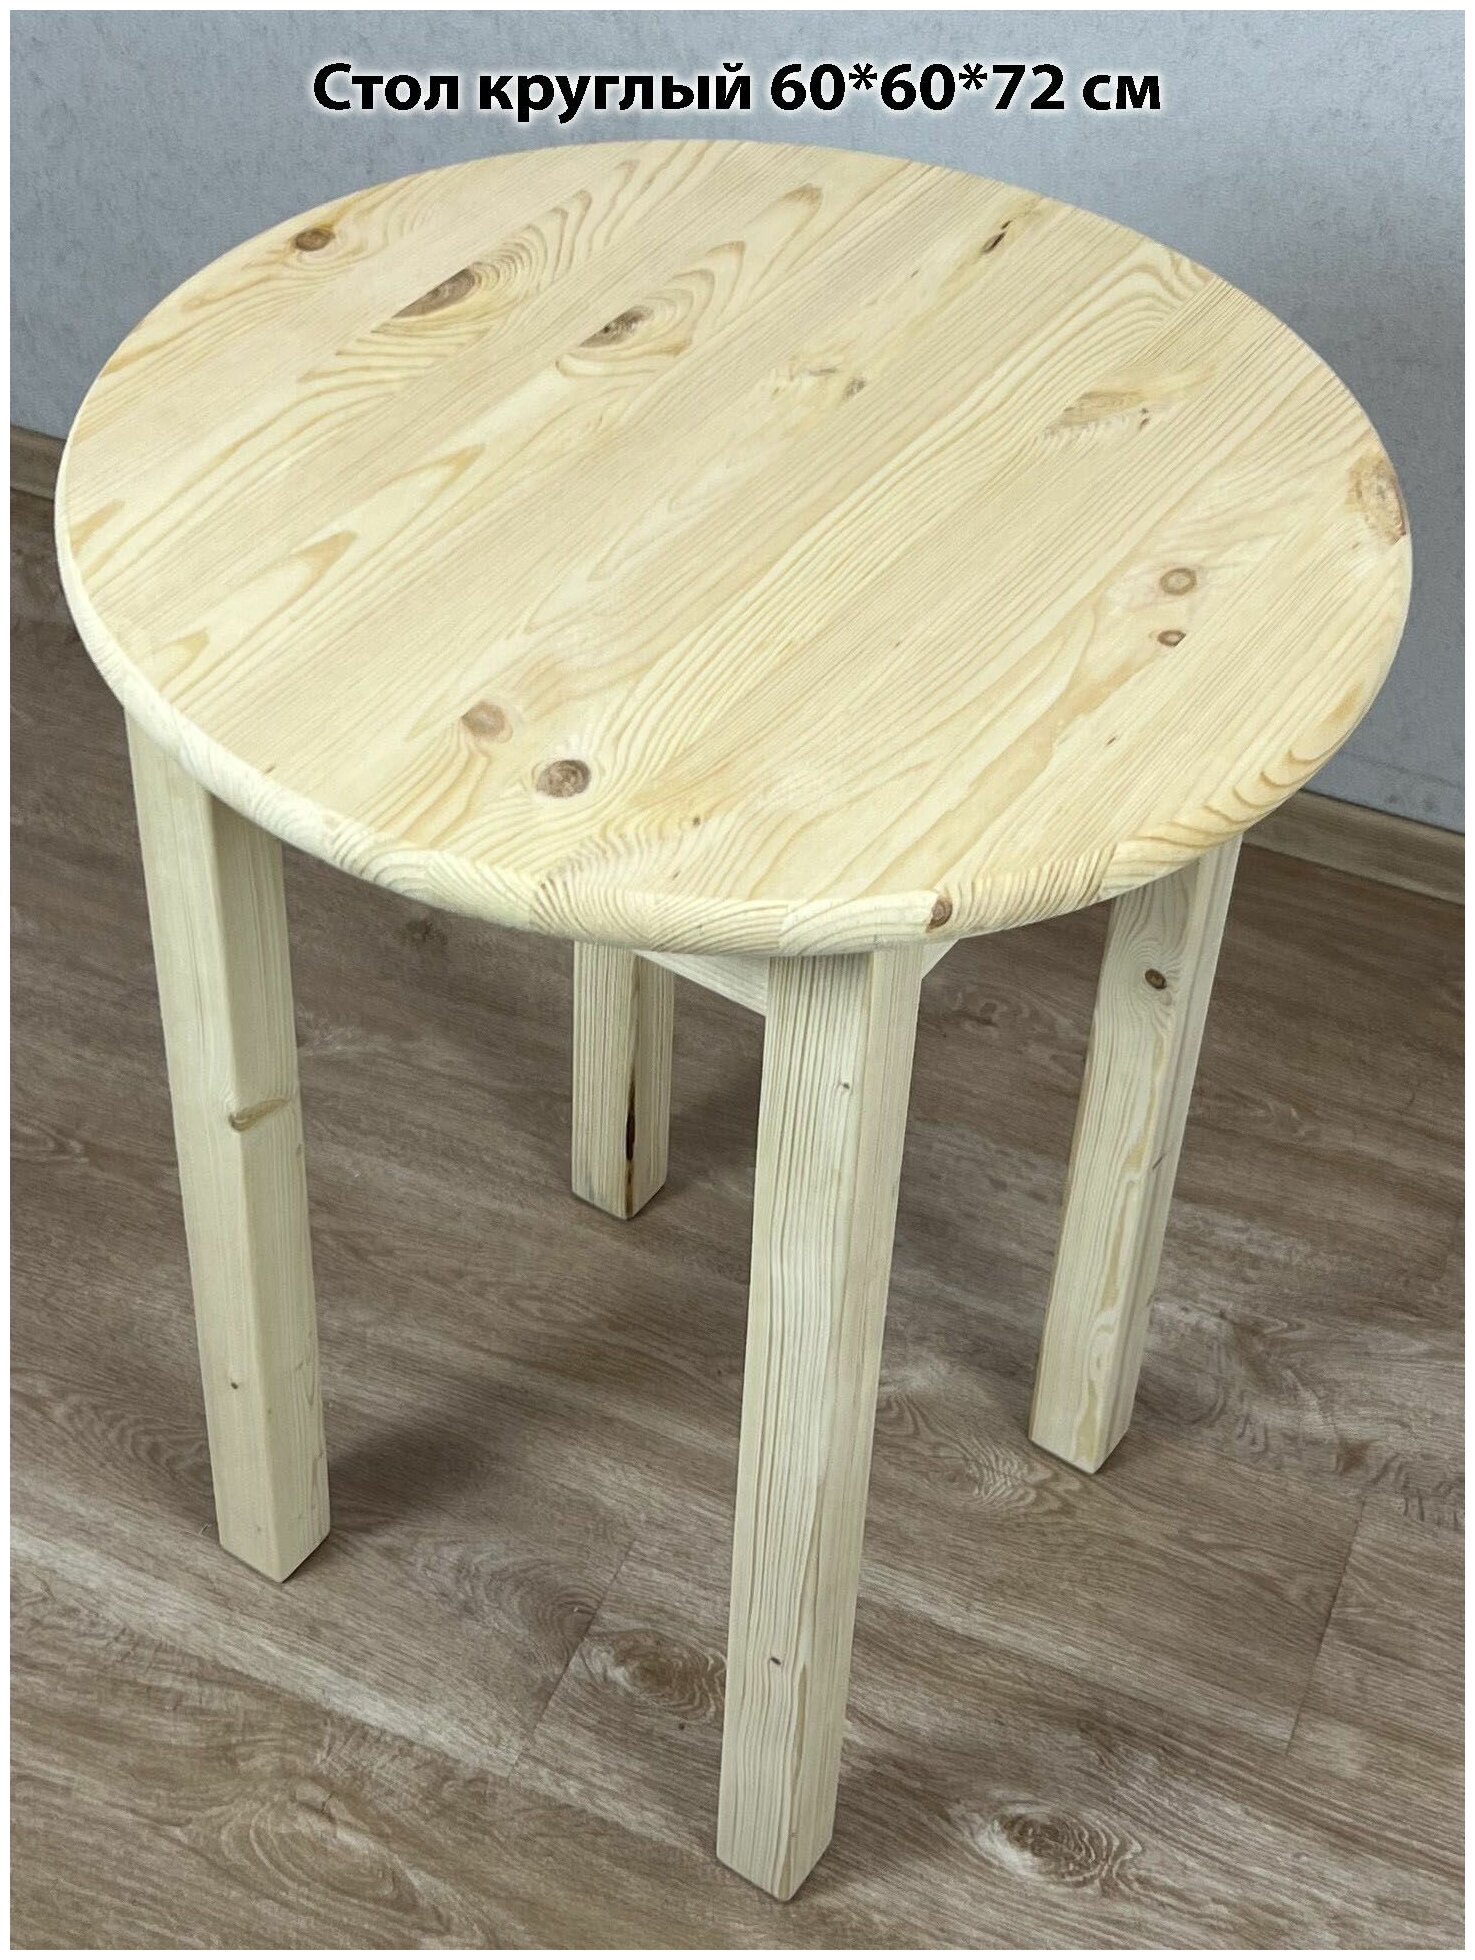 Стол кухонный эконом круглый маленький деревянный, 60х60х72 см